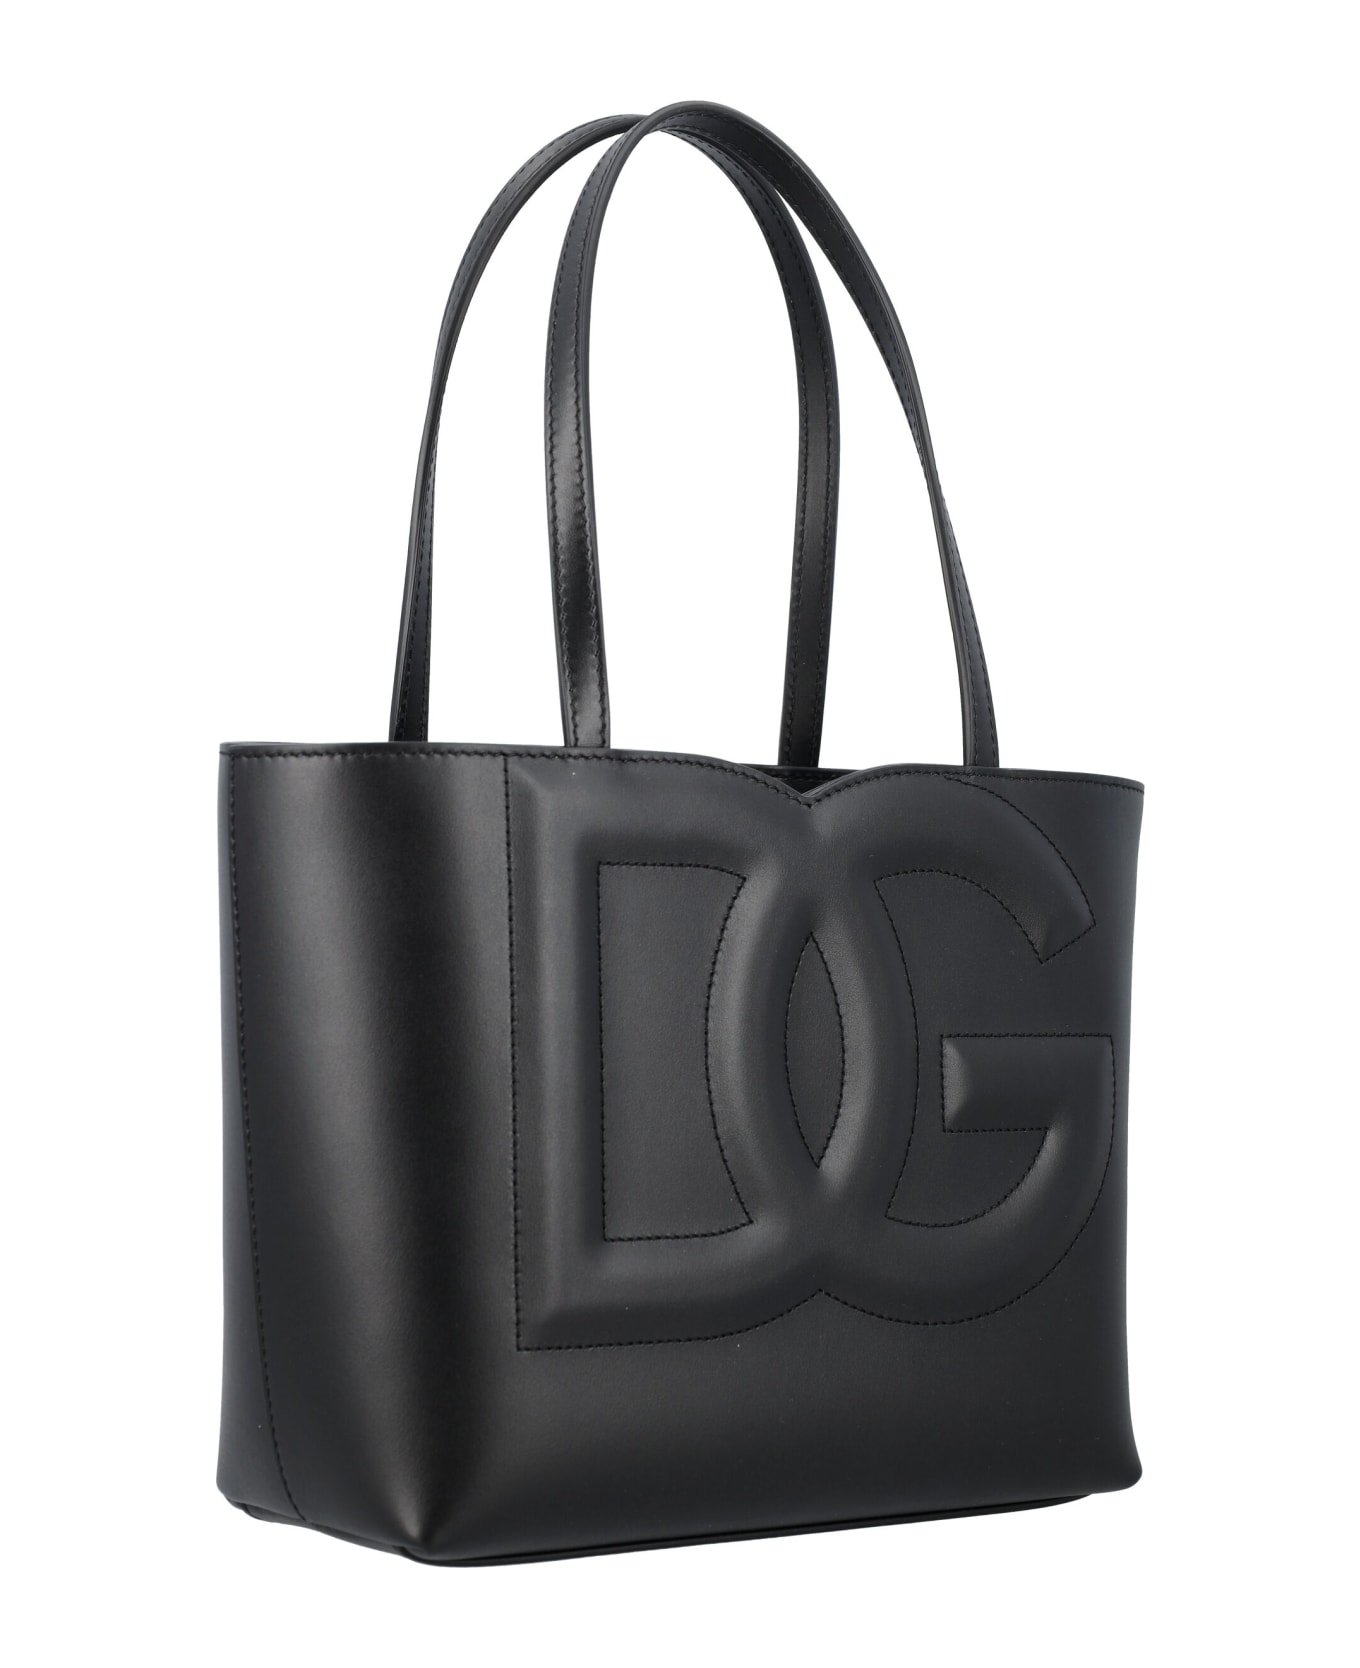 Dolce & Gabbana Dg Tote Bag - BLACK